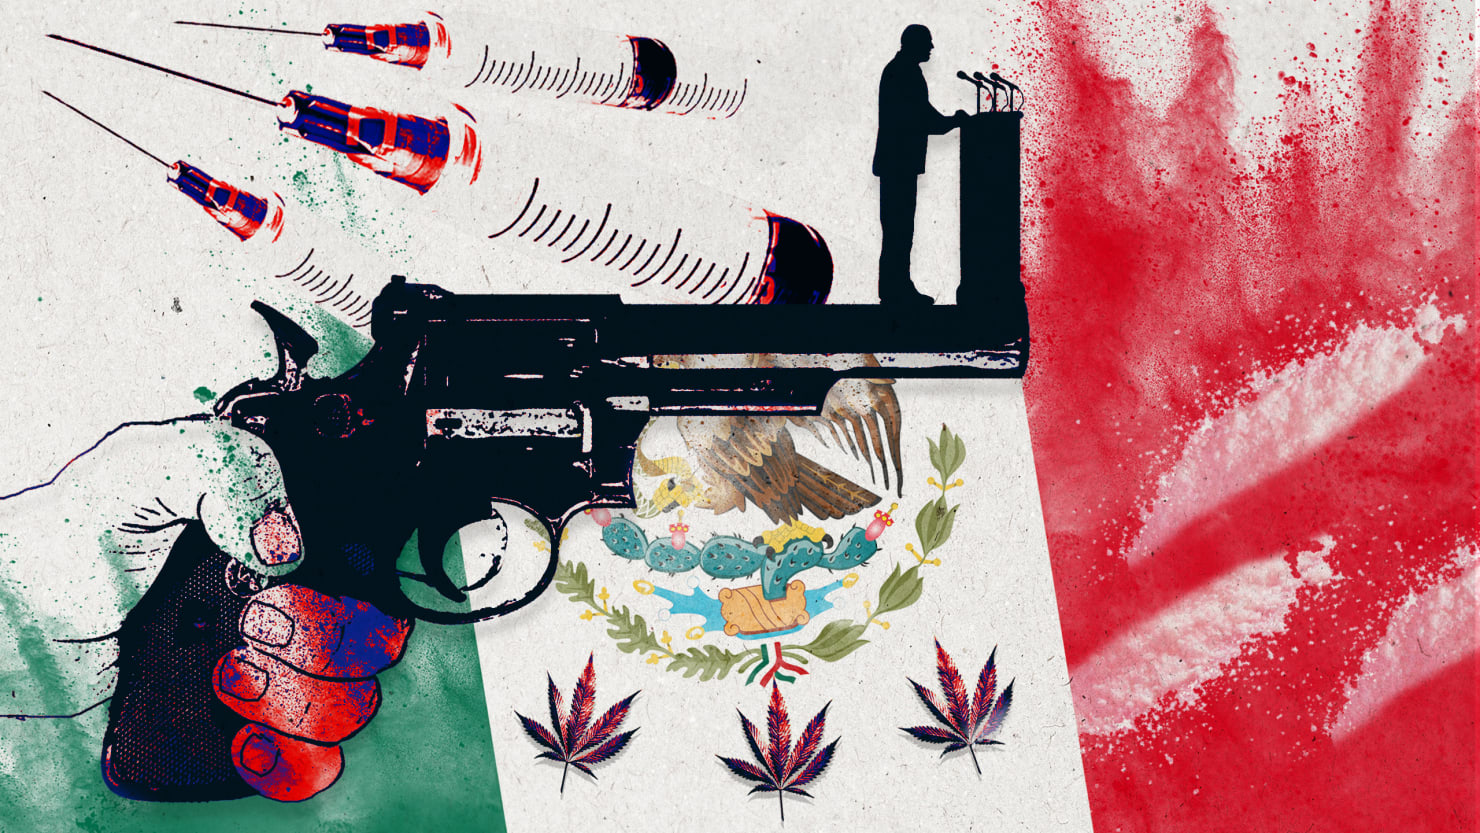 181001-Kyrt-Drug-Cartels-Mexico-drug-war-tease_fsl1ny